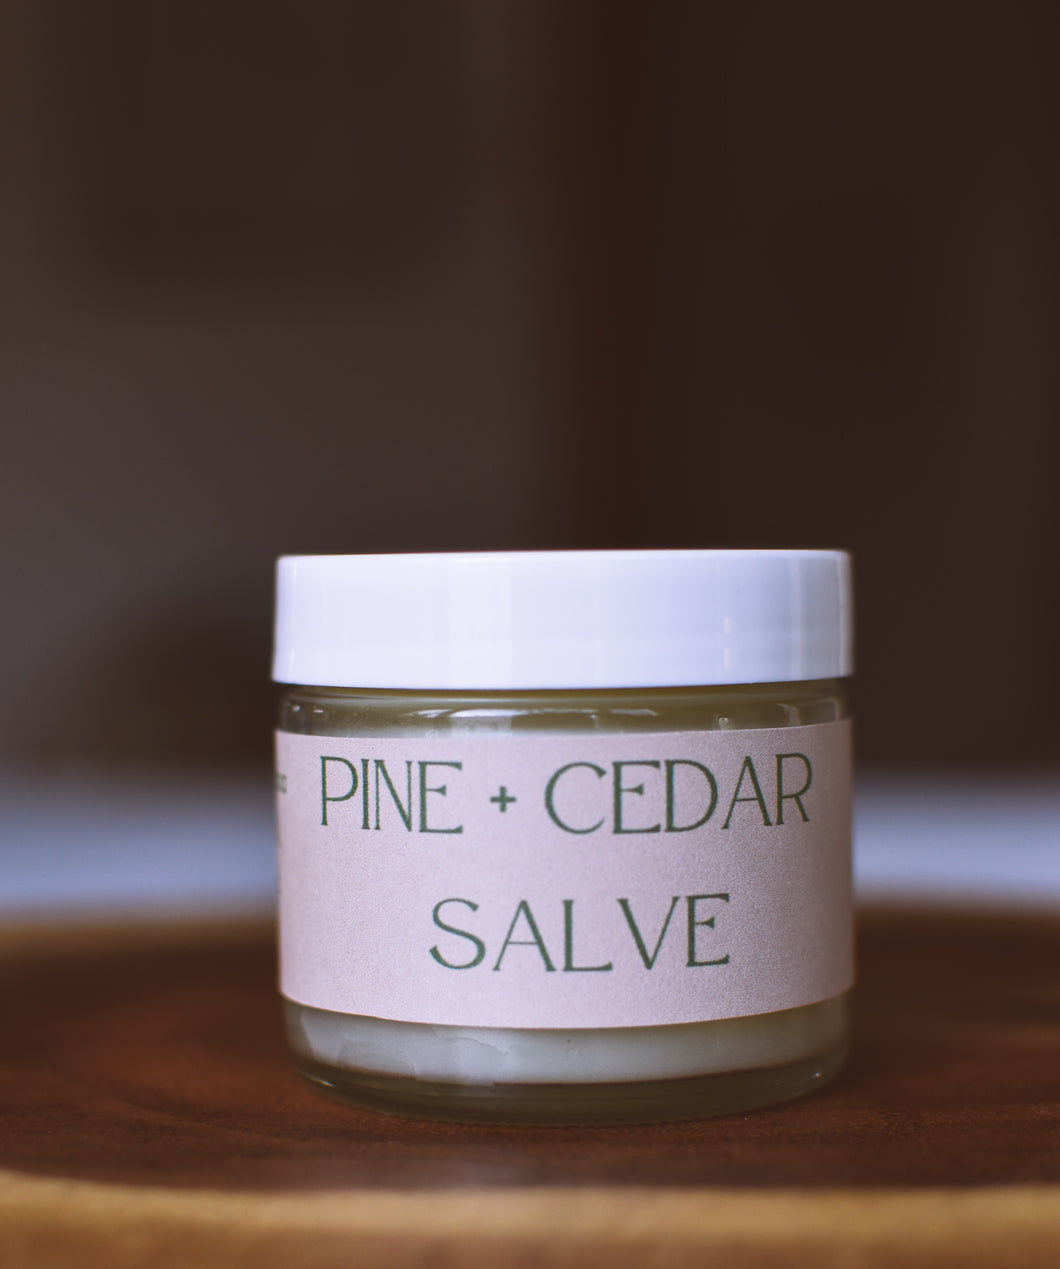 Pine + Cedar Salve